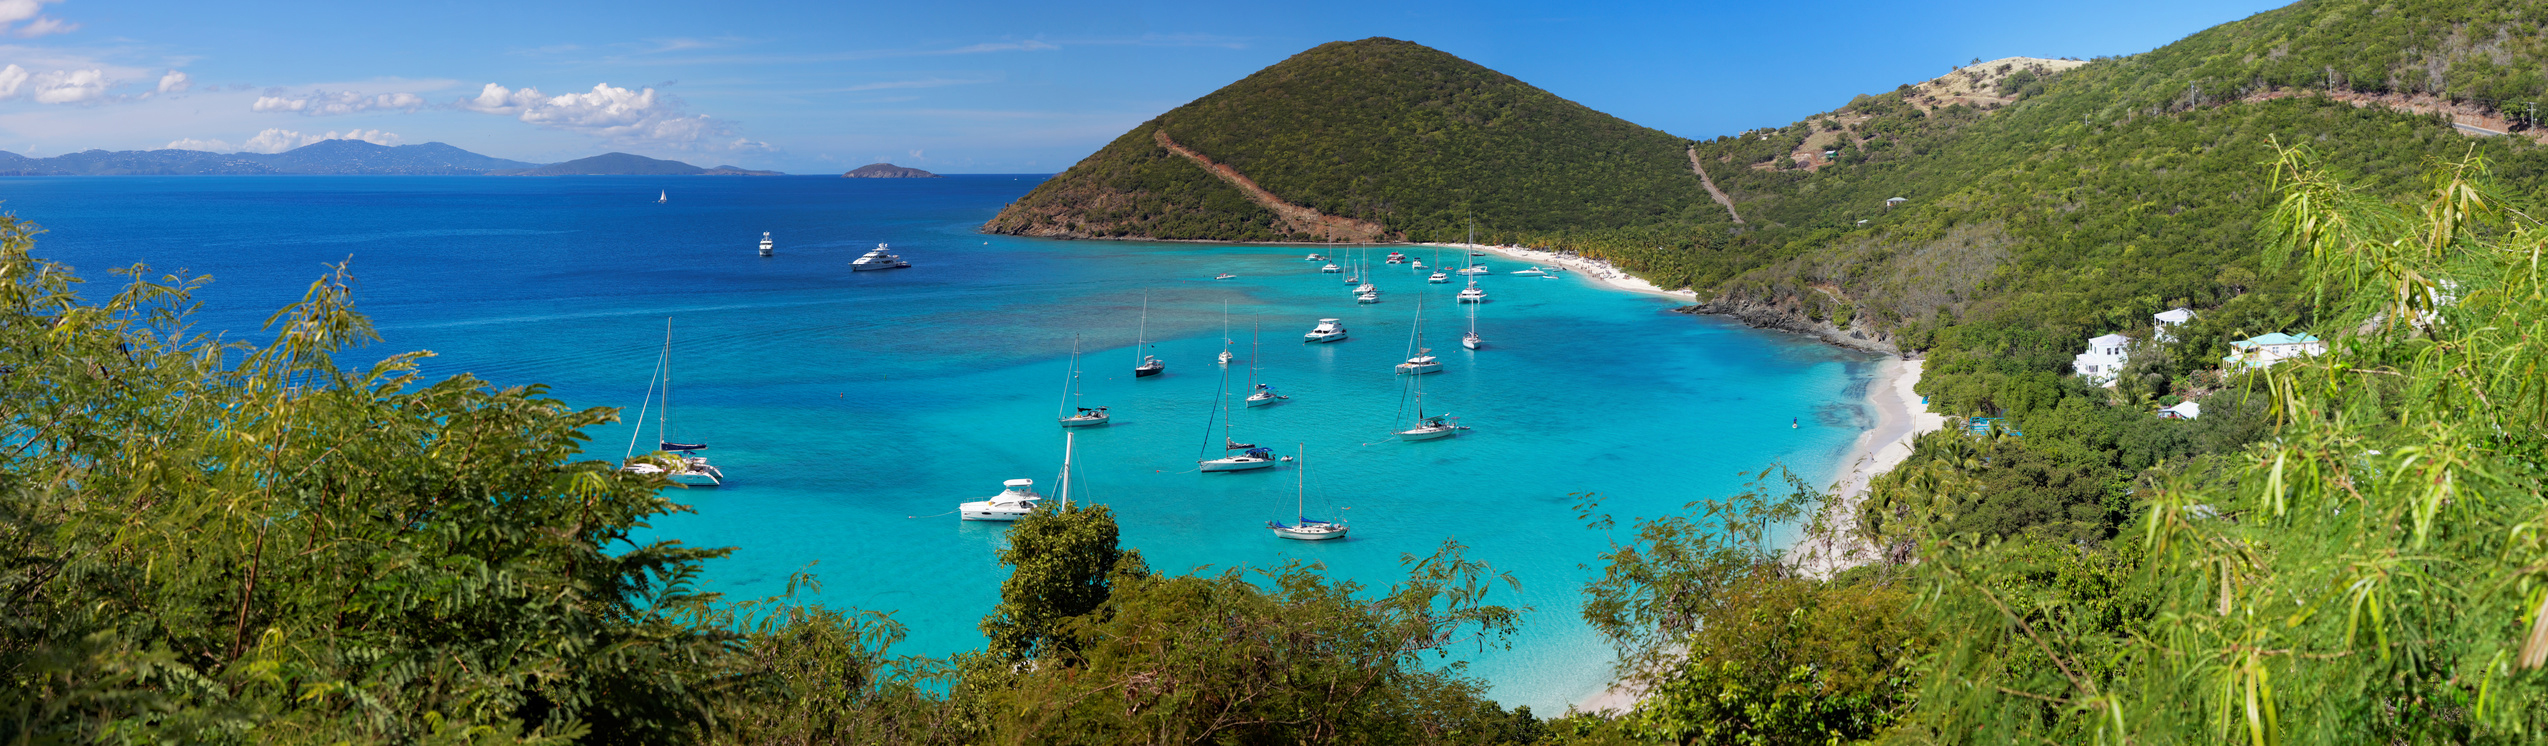 Location Catamaran Moteur Caraïbes : Cuba – Iles Vierges – St.Martin – Antigua – Guadeloupe – Martinique – Ste Lucie – St Vincent – Grenades – Bahamas